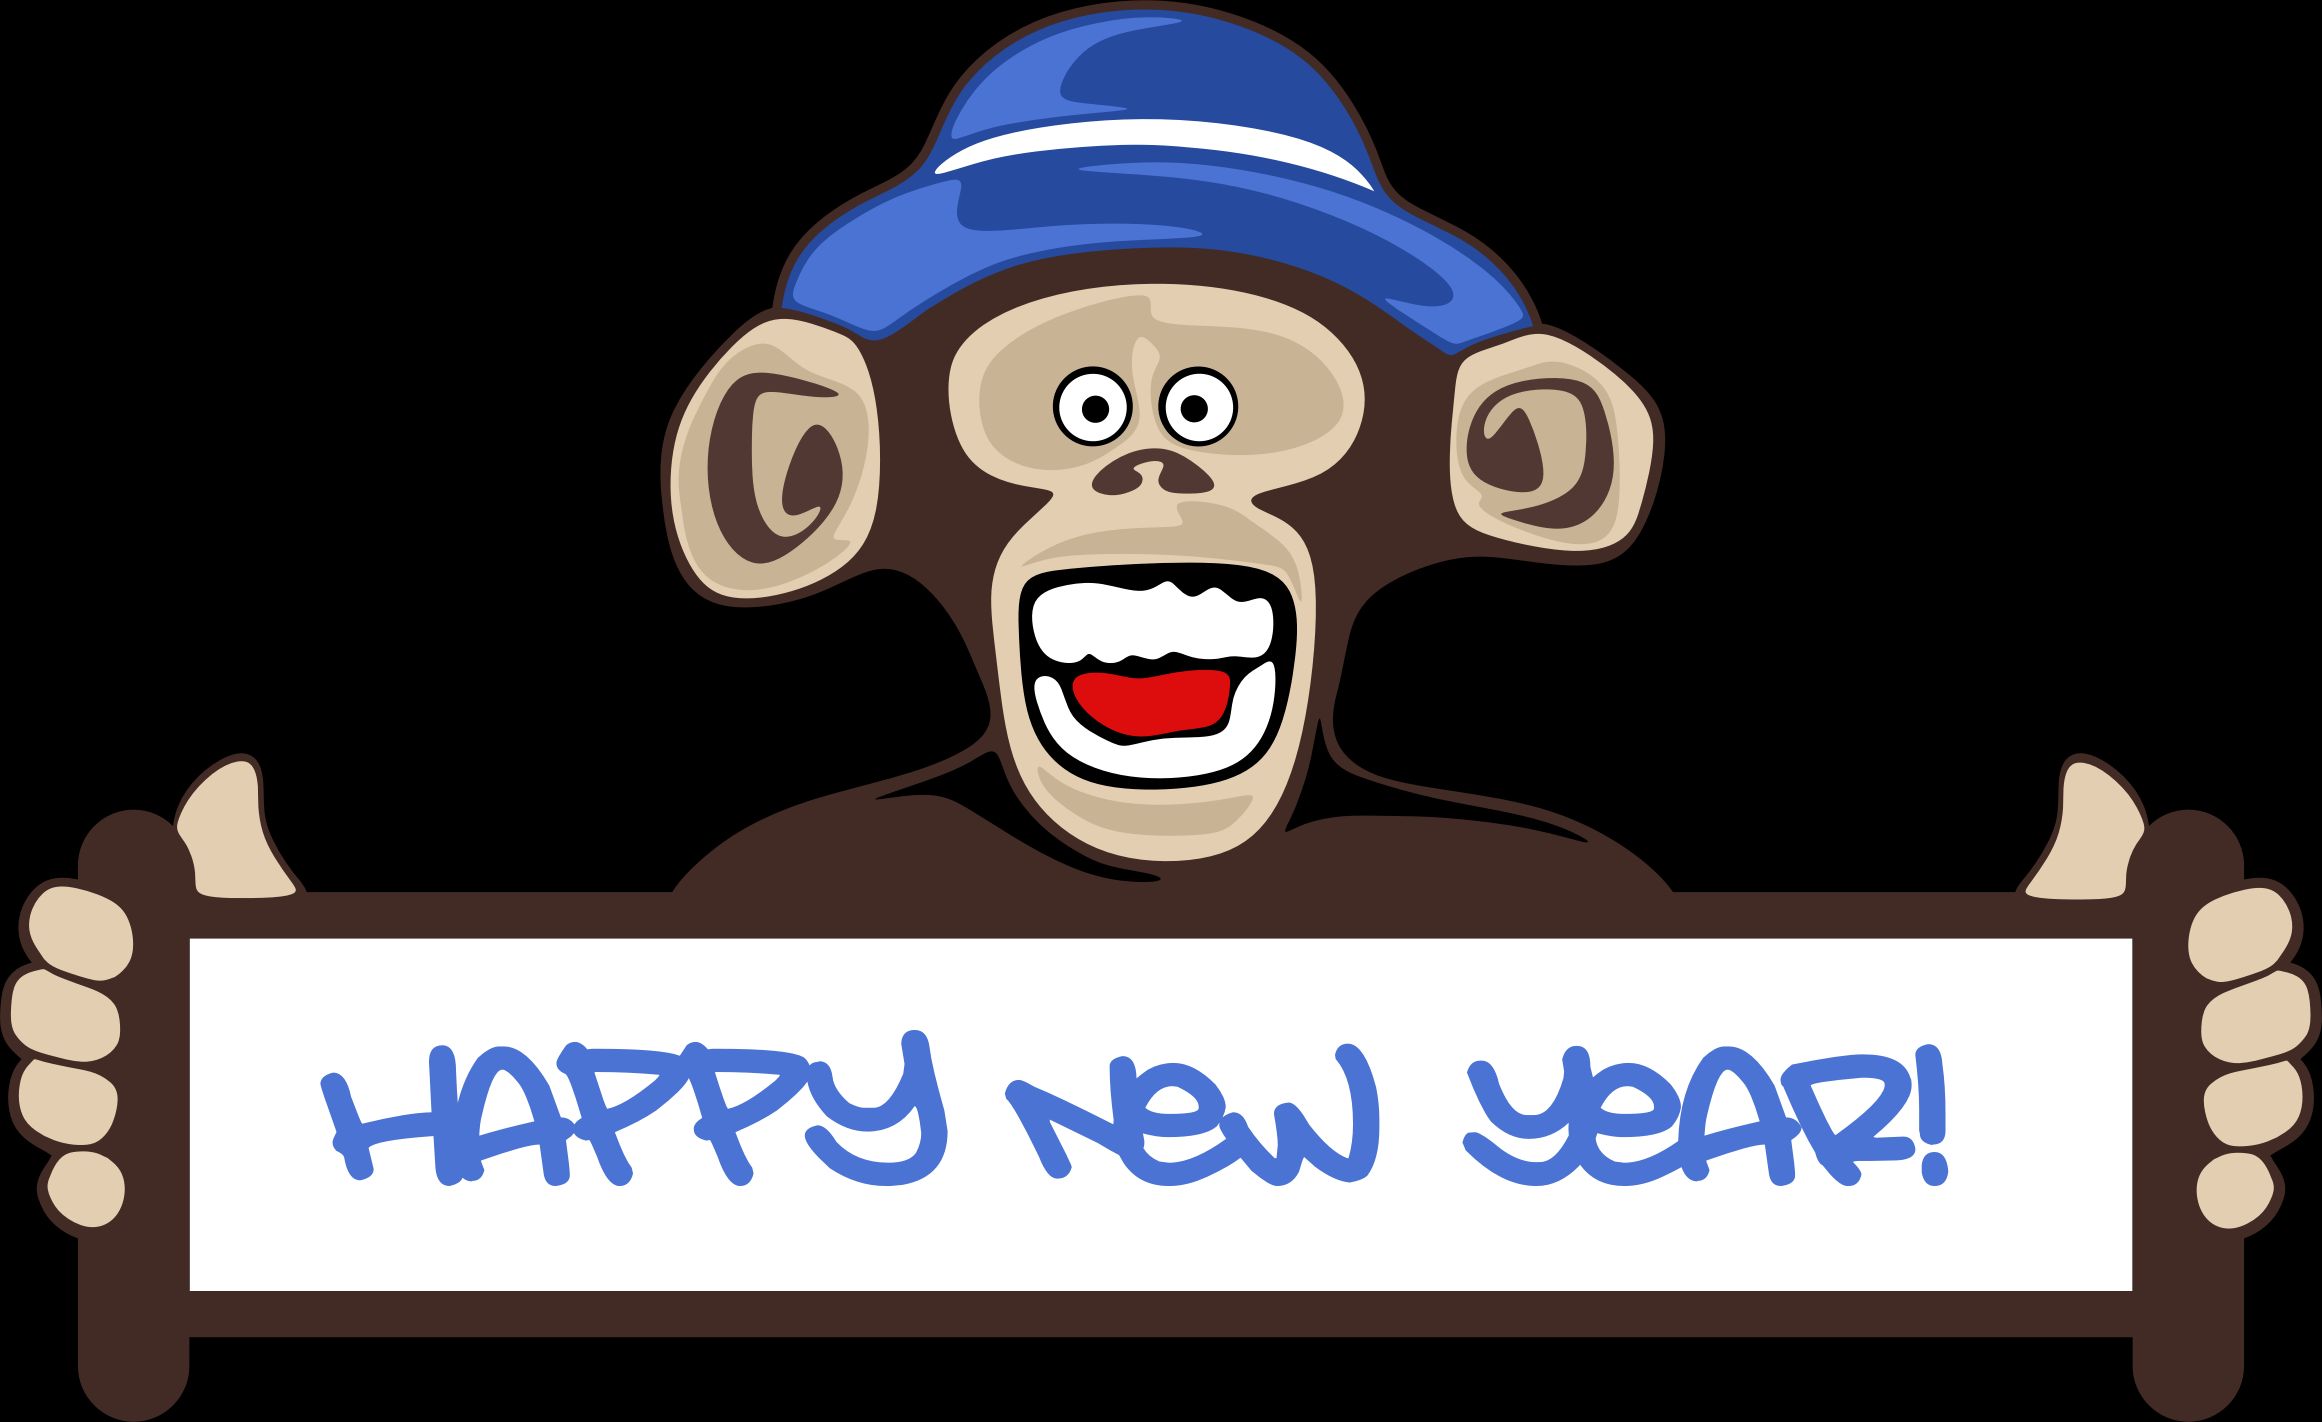 Descarga gratuita de fondo de pantalla para móvil de Año Nuevo, Día Festivo, Mono, Humor, Feliz Año Nuevo.